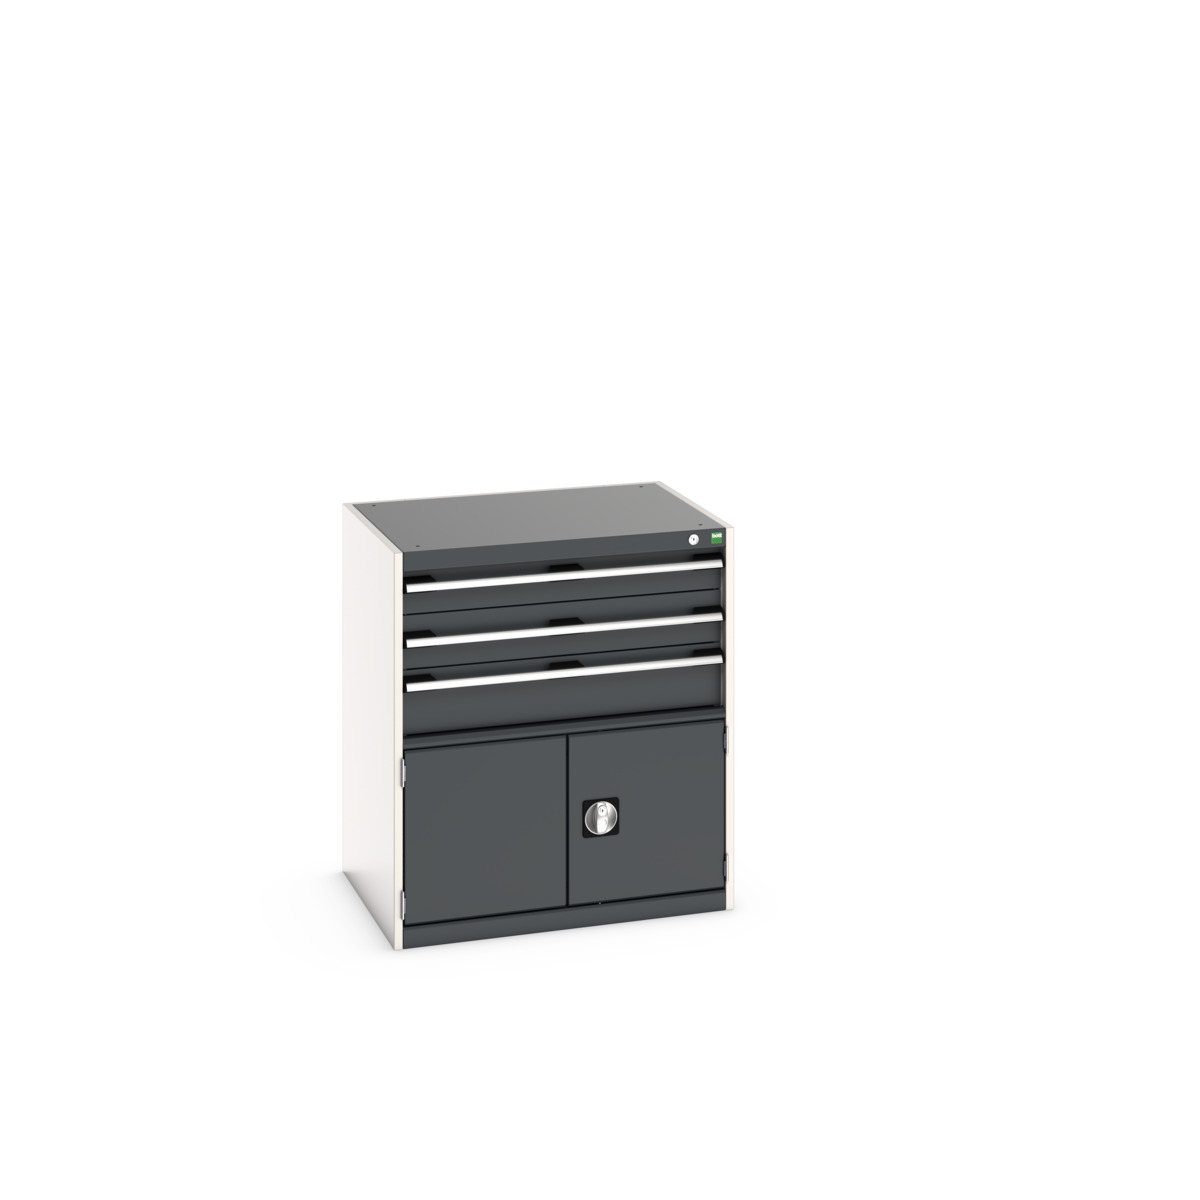 40020033. - cubio drawer-door cabinet